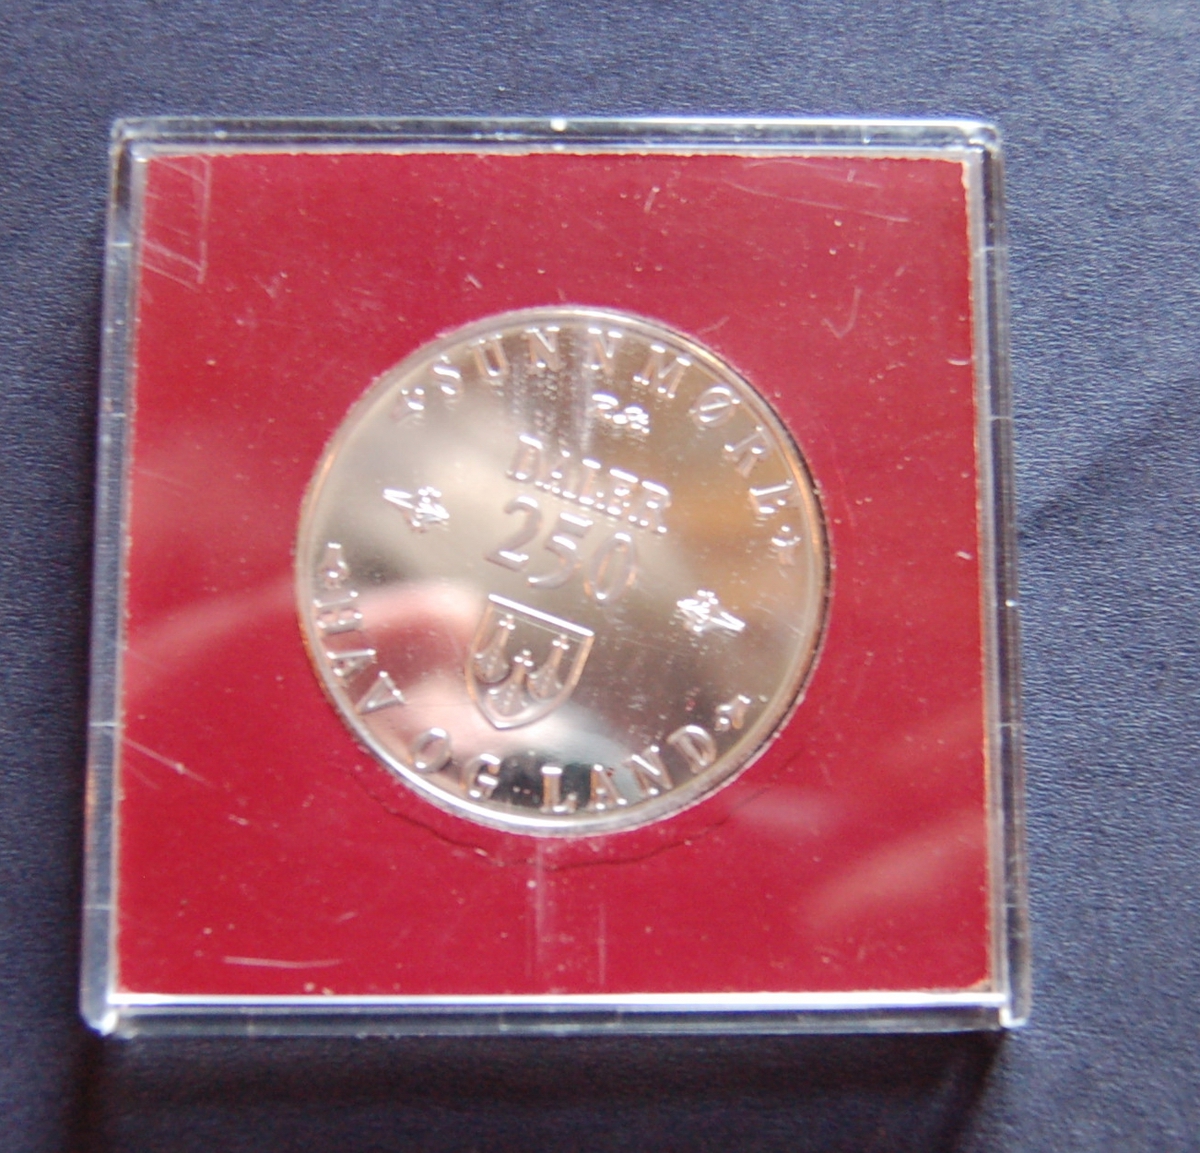 Form: Rund mynt i kvadratisk etui av tre
